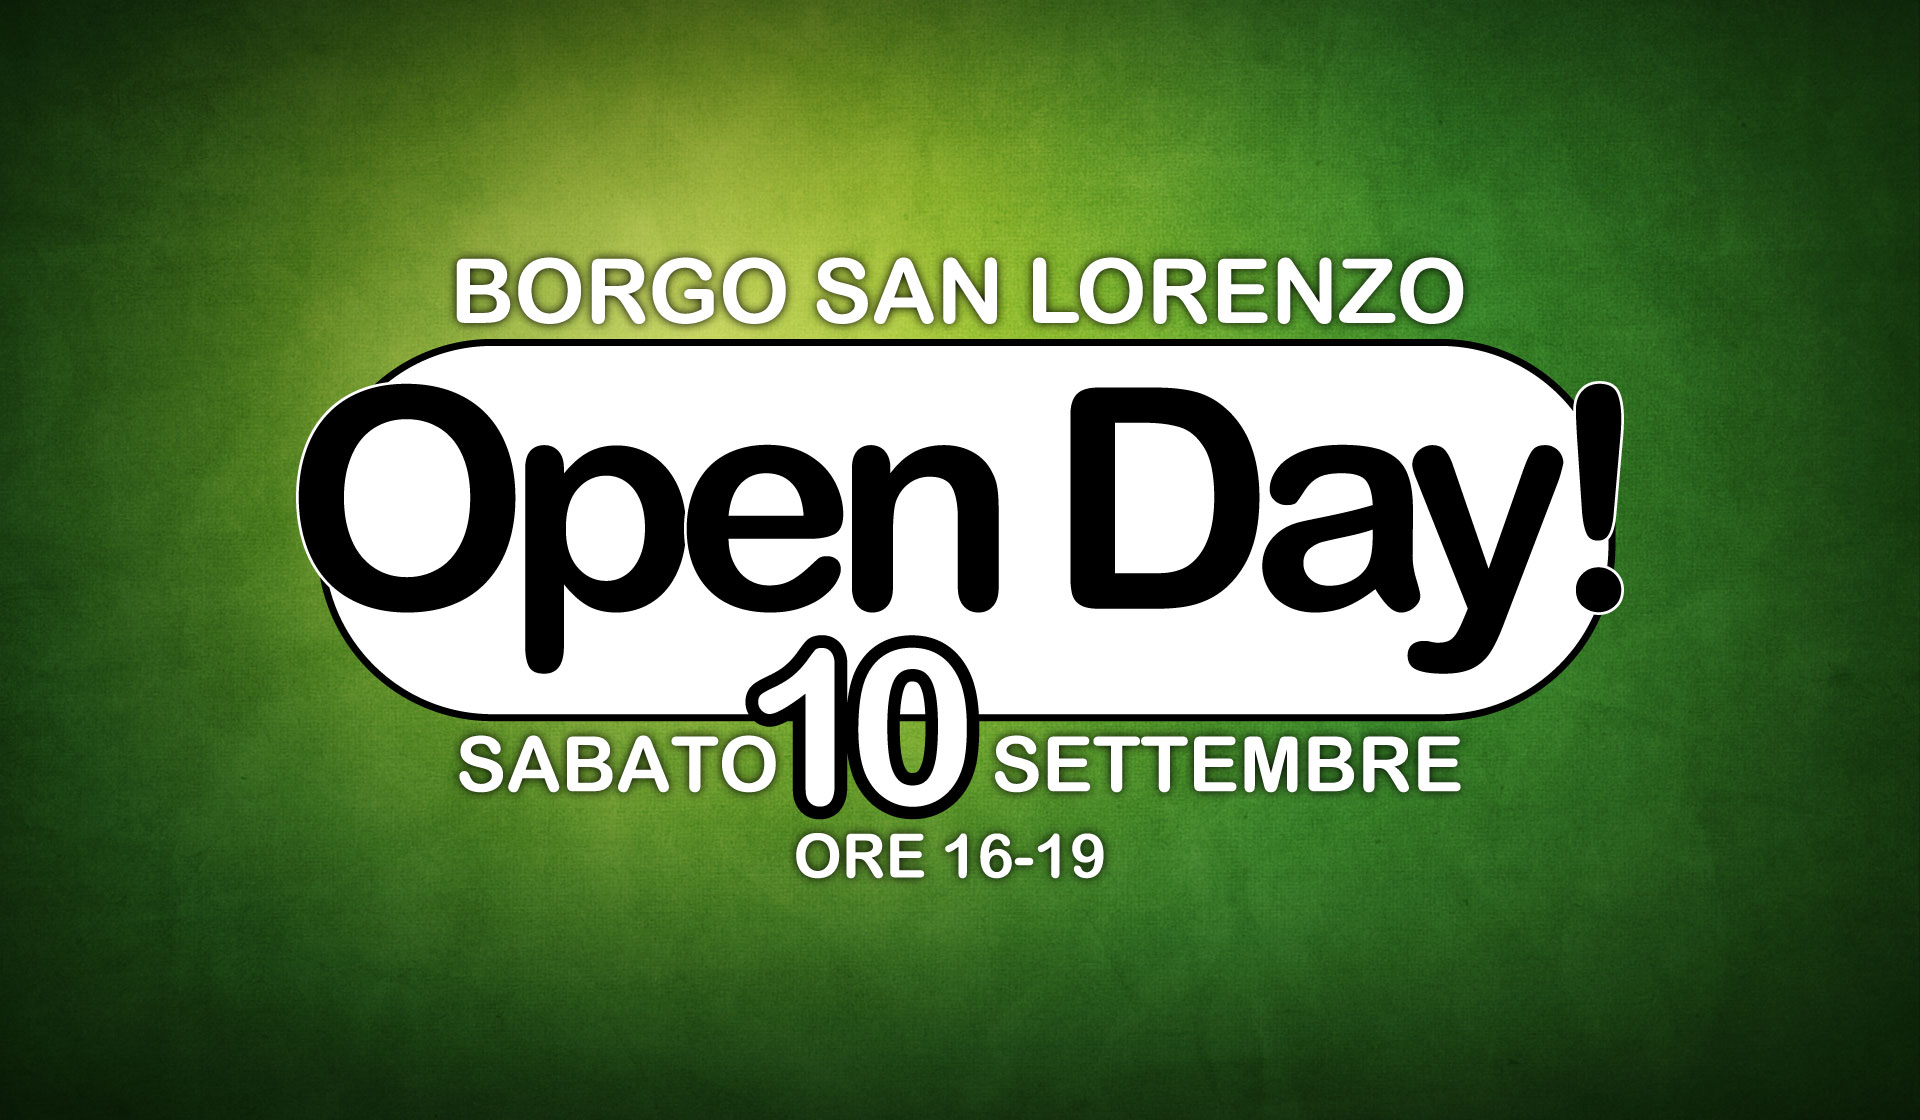 Open Day Borgo San Lorenzo 10 Settembre 2016 ore 16-19